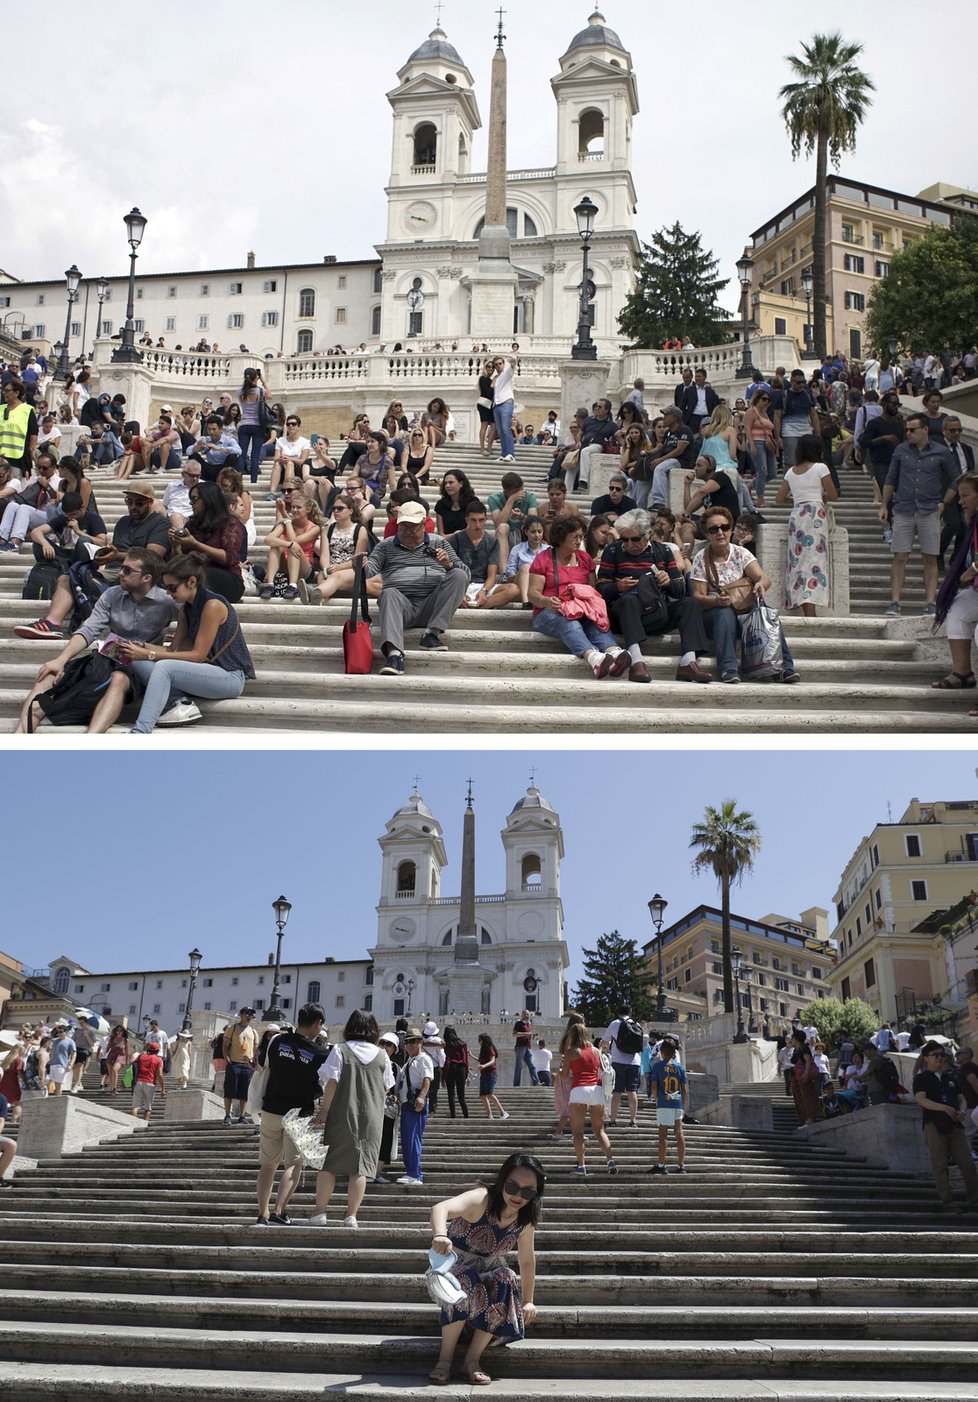 Římská městská policie zakázala sedět na Španělských schodech